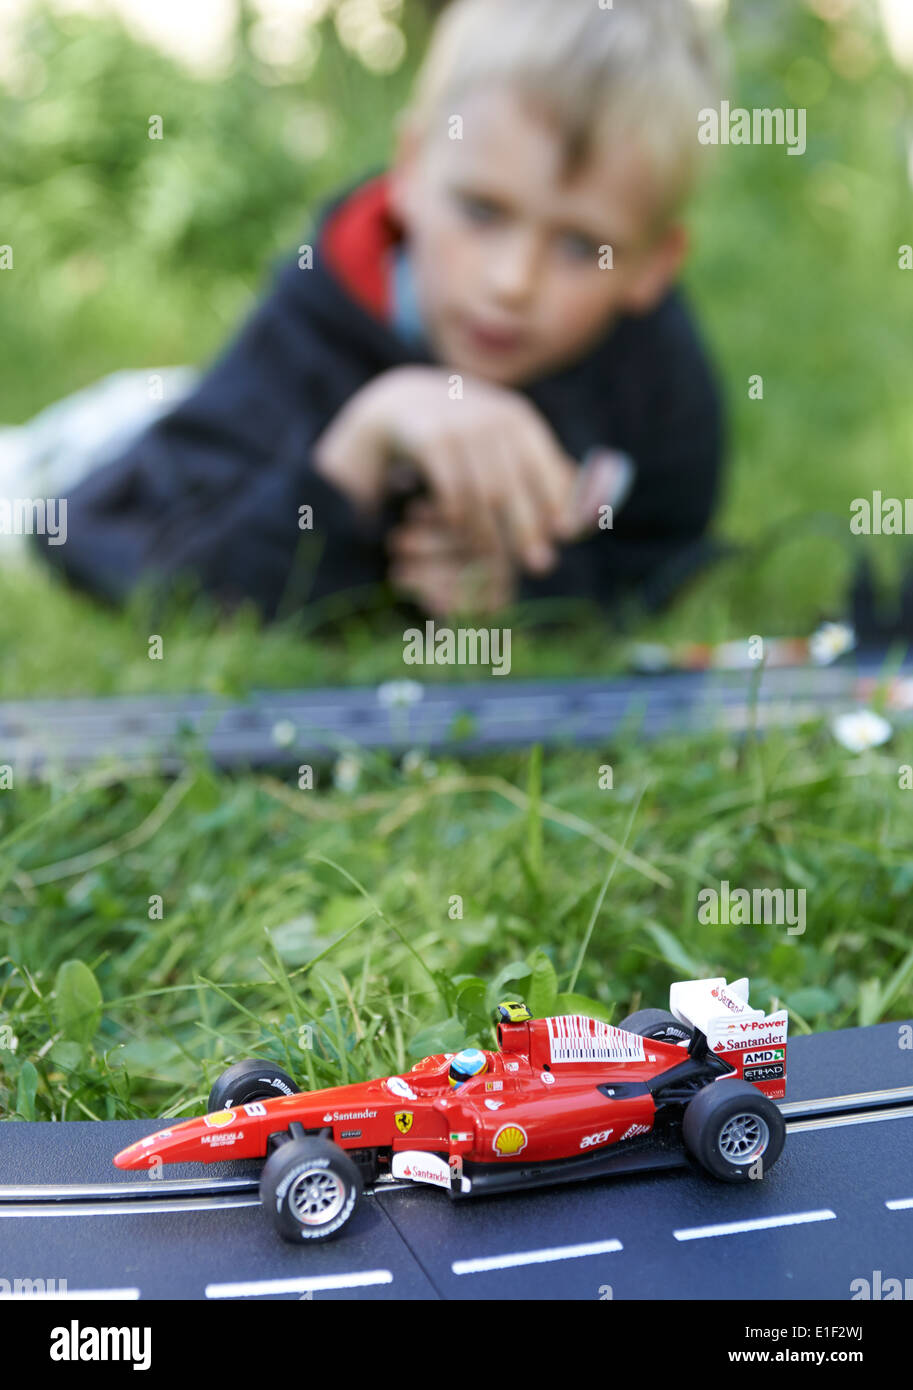 Kind blonde junge spielt mit Rennstrecke Slotcars außerhalb im grünen Rasen Stockfoto